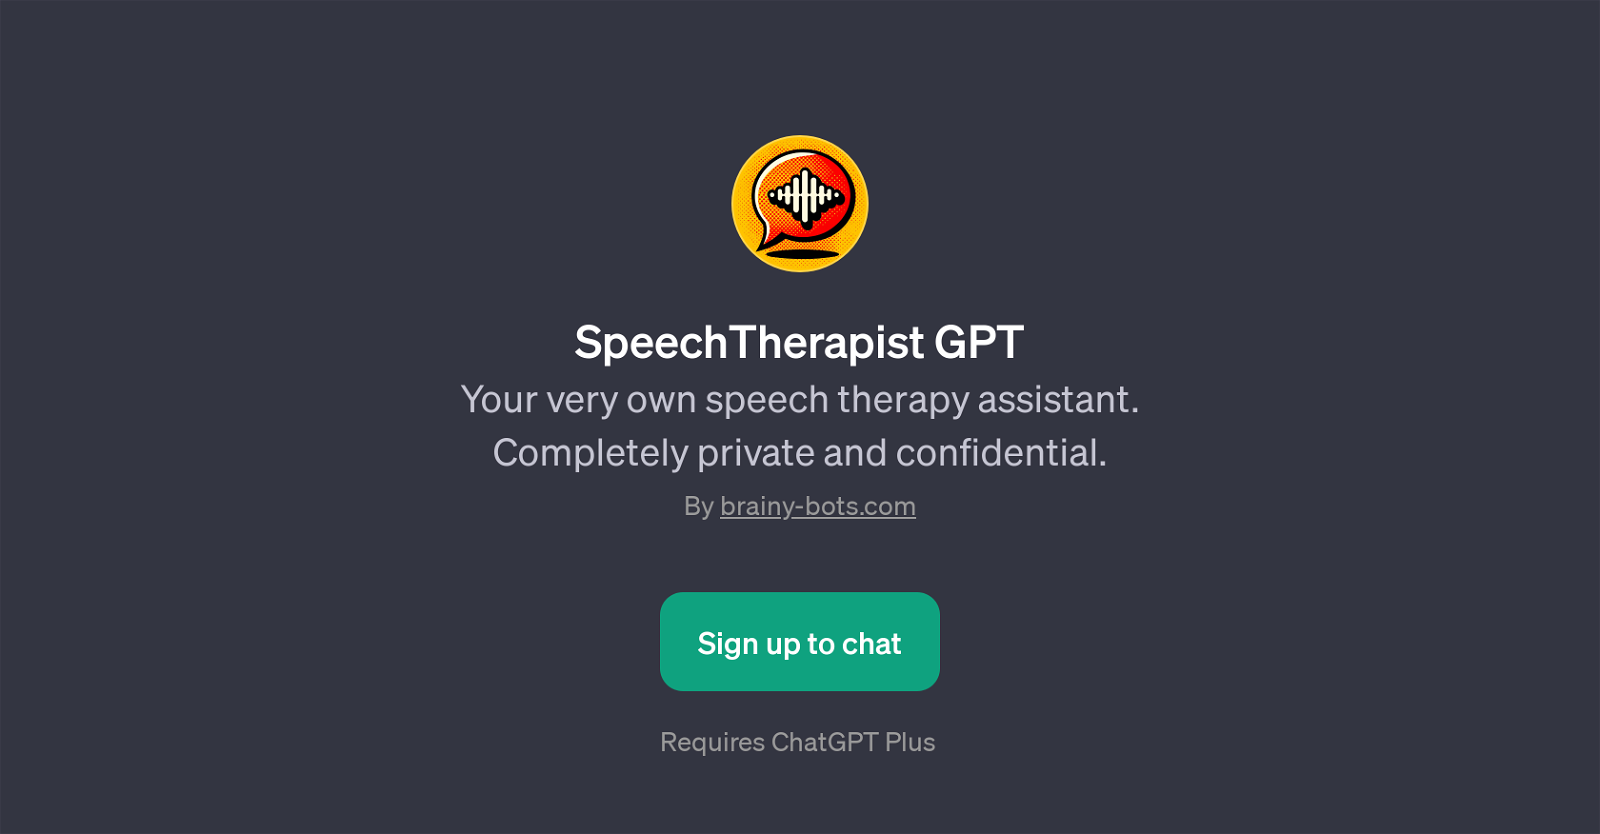 SpeechTherapist GPT website